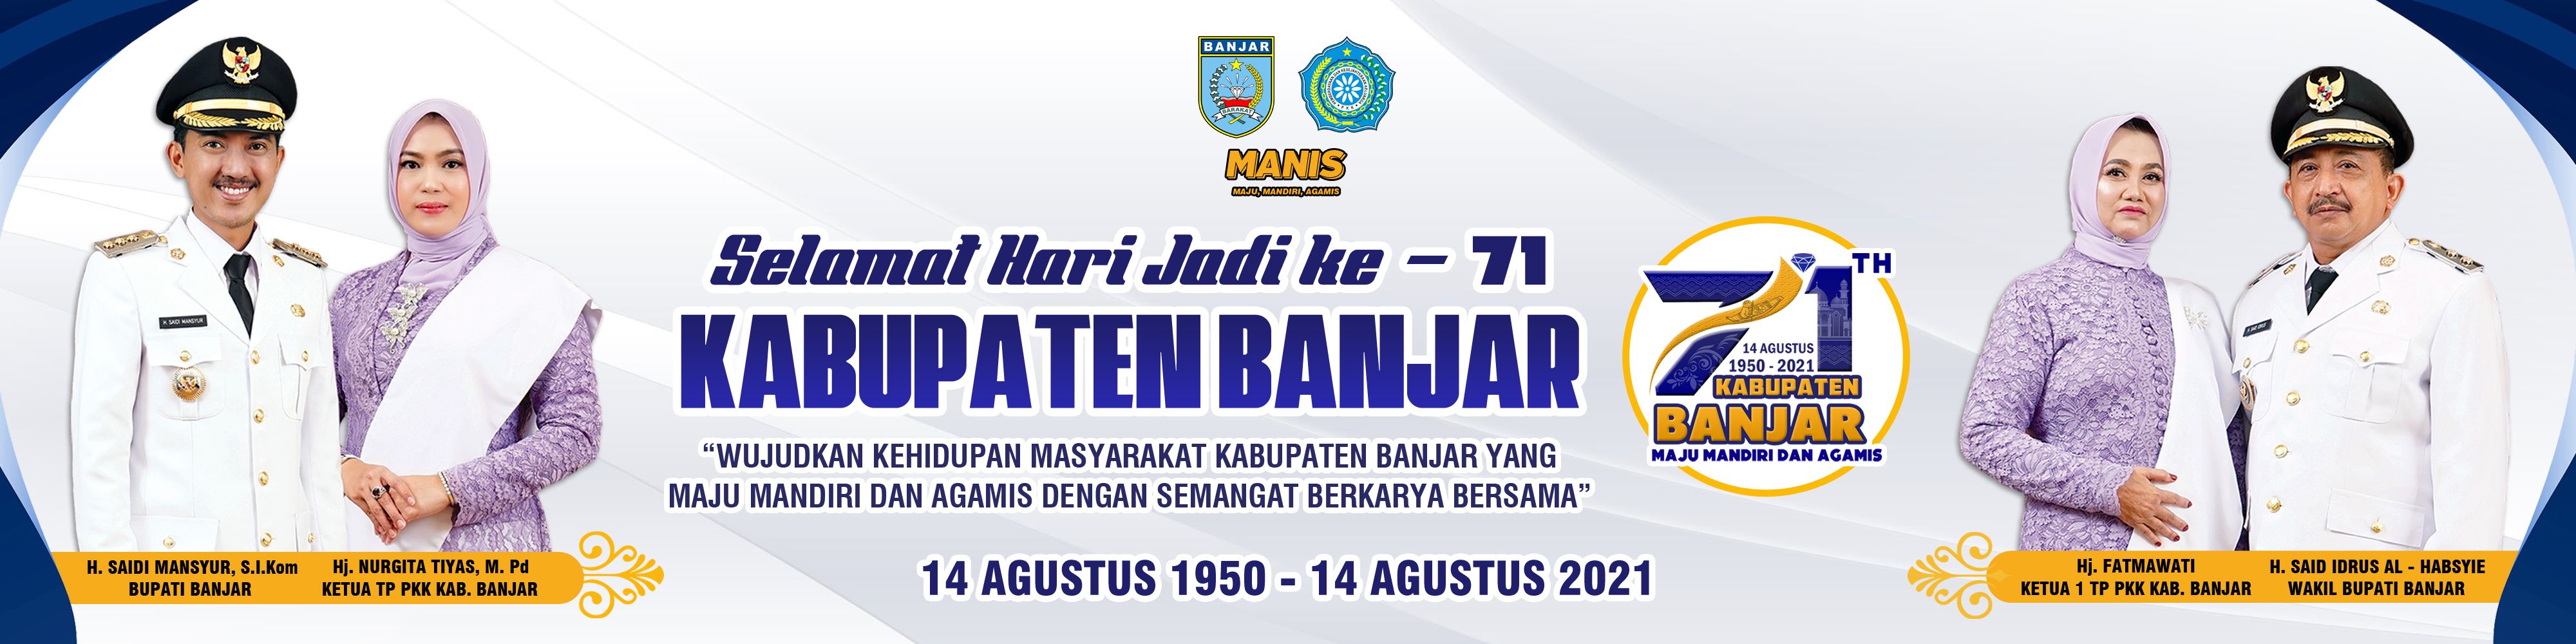 Banner Hari Jadi Kabupaten Banjar Ke-71 Kalimantan Selatan